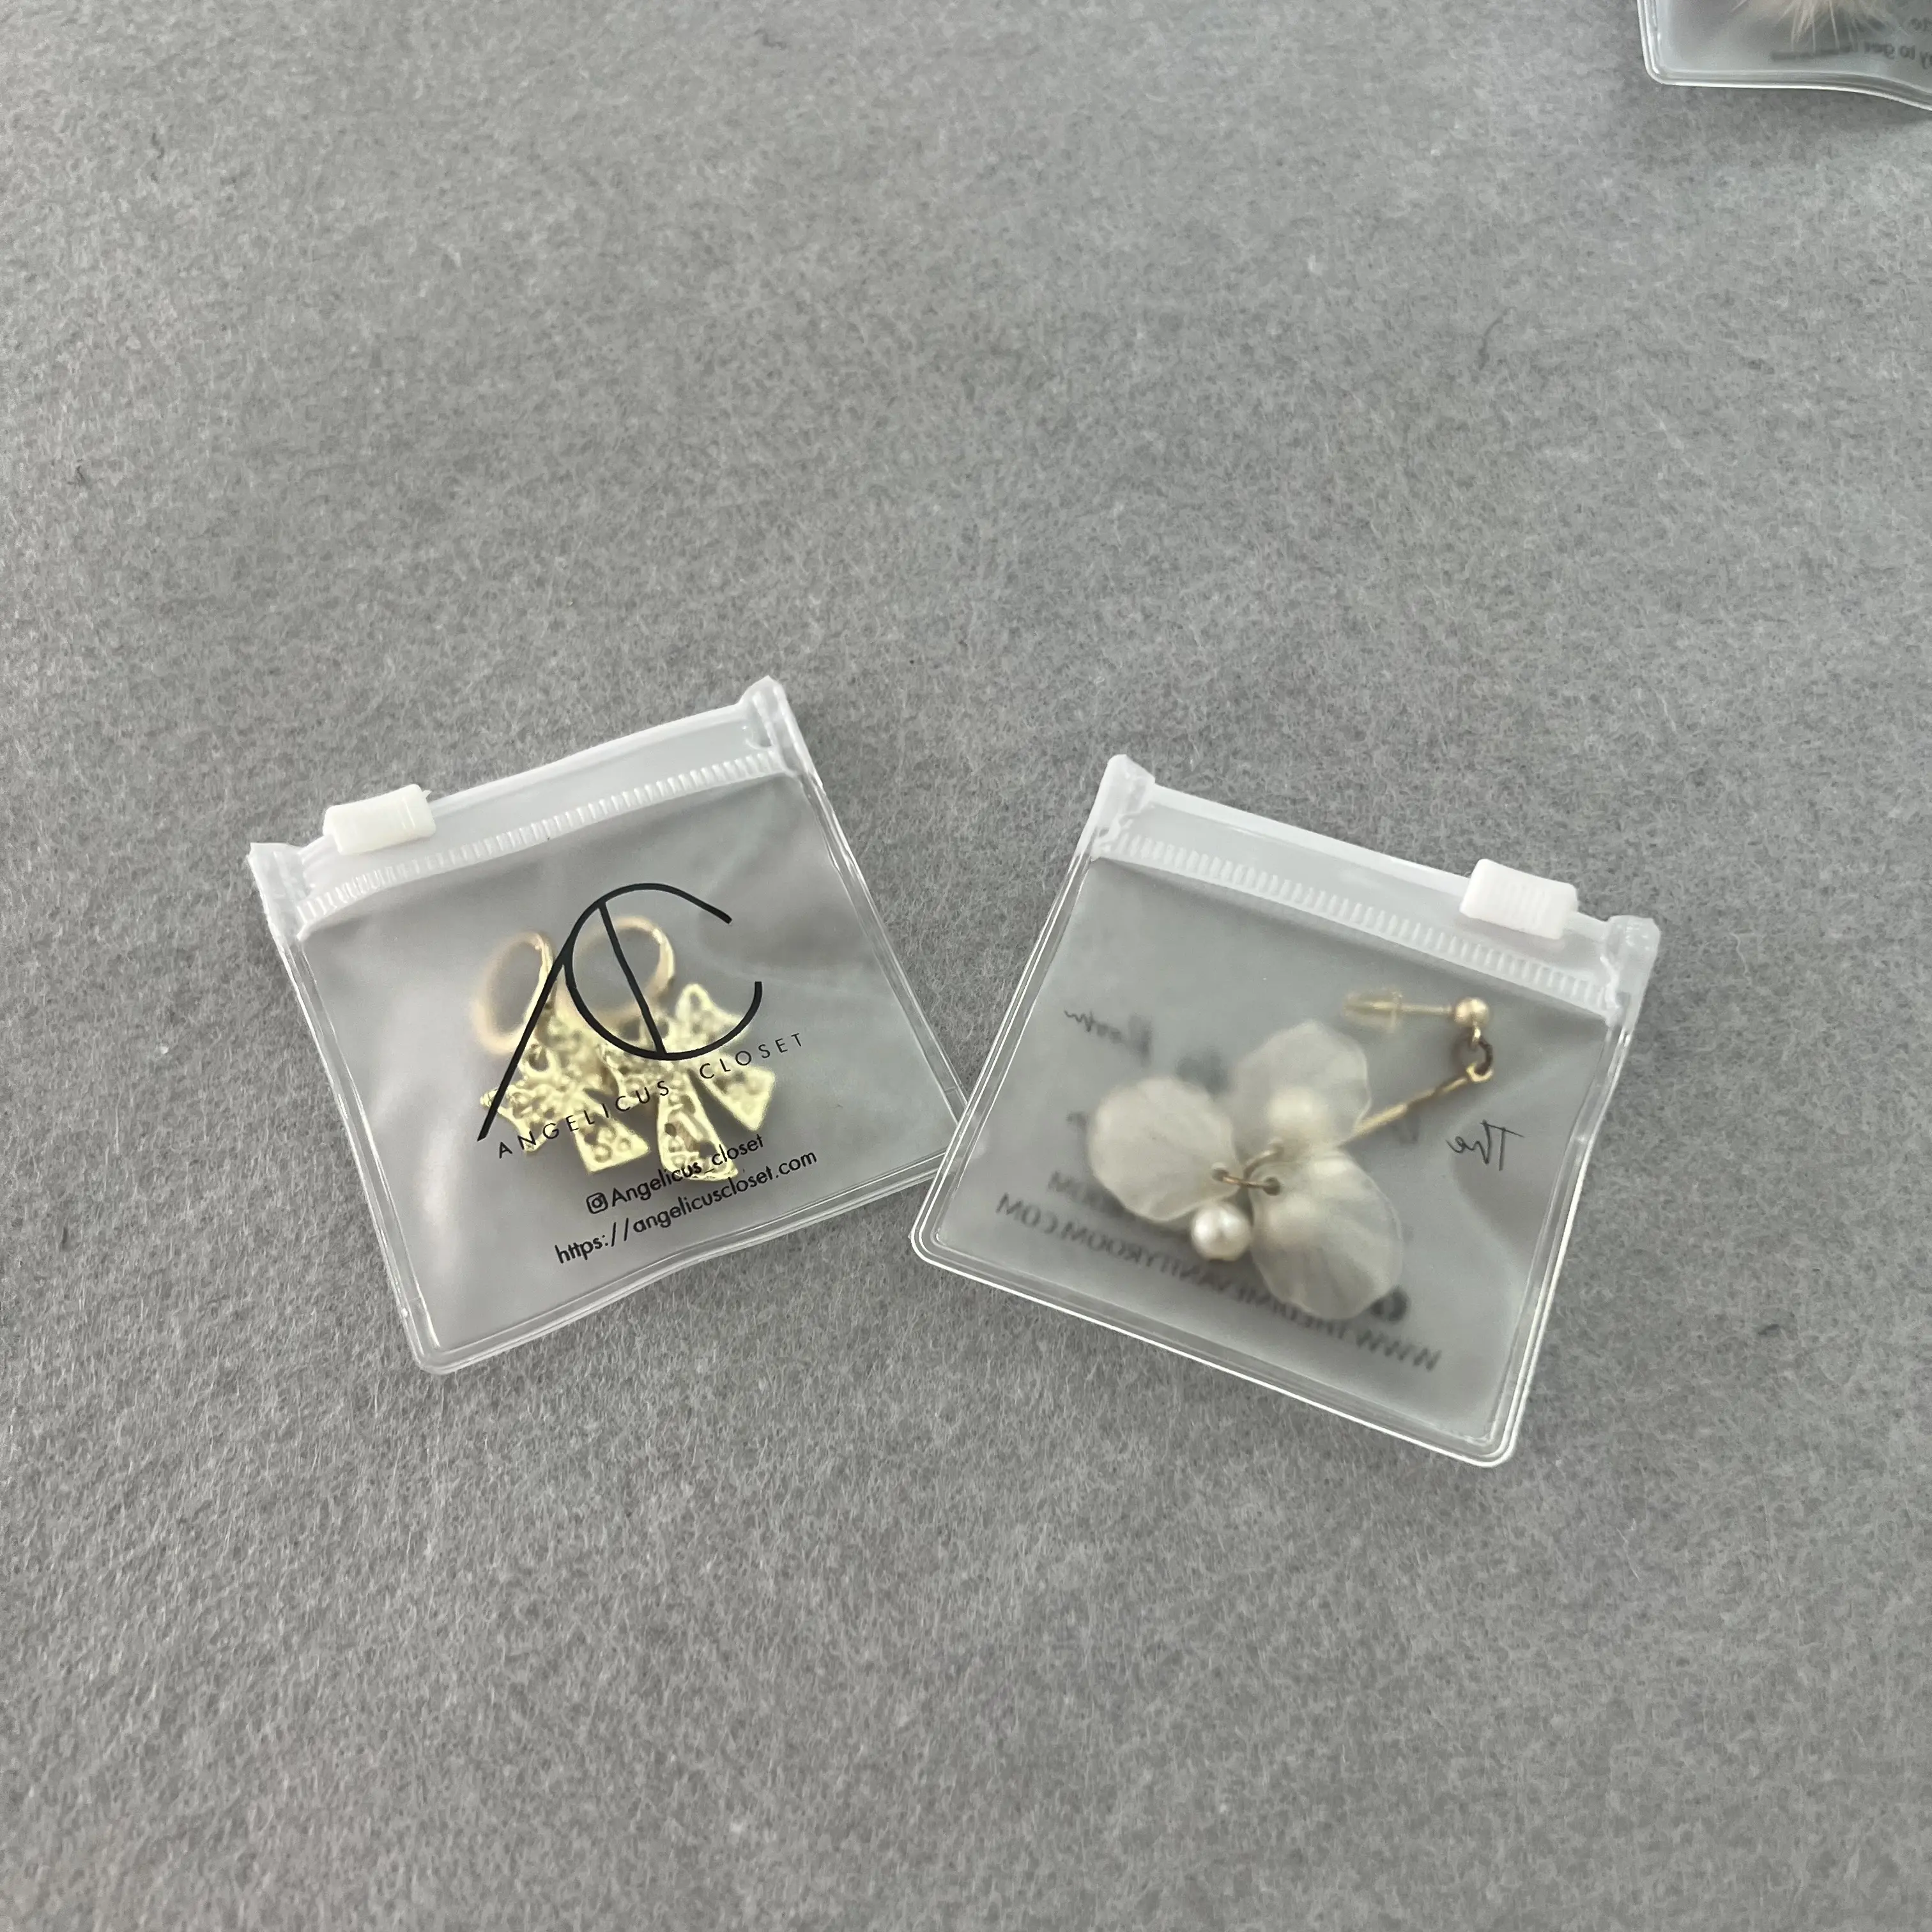 Mode petits sacs à fermeture éclair sac à fermeture éclair pour bijoux petit étui givré/transparent en plastique PVC emballage sérigraphie accepter